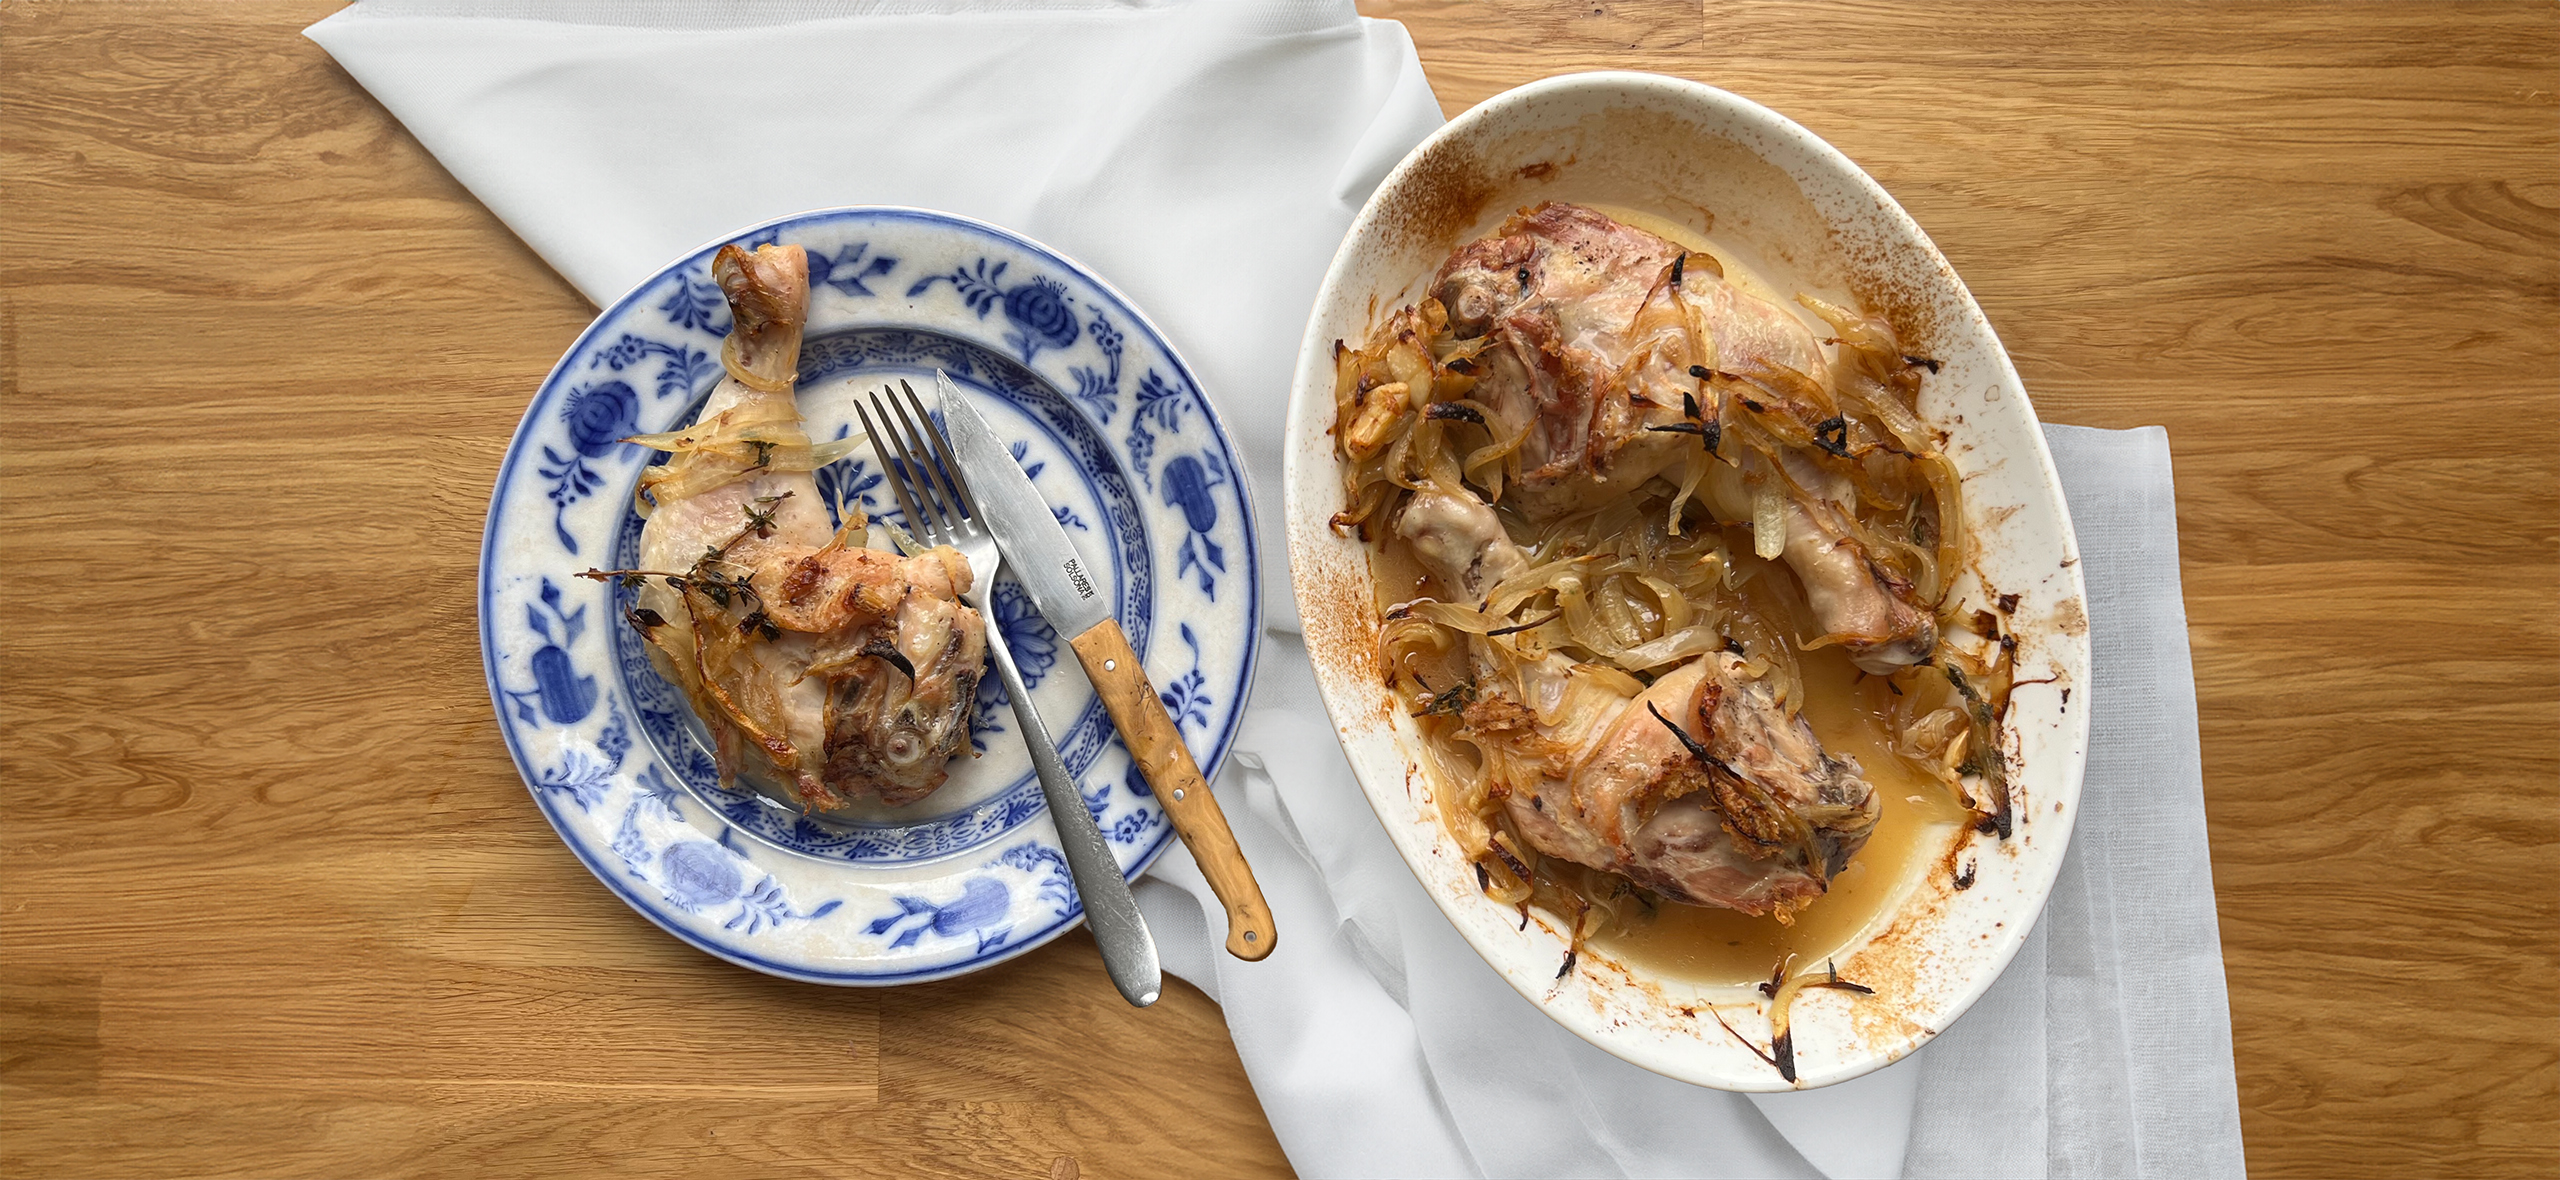 Мясо по-французски из курицы в духовке, пошаговый рецепт с фото на ккал